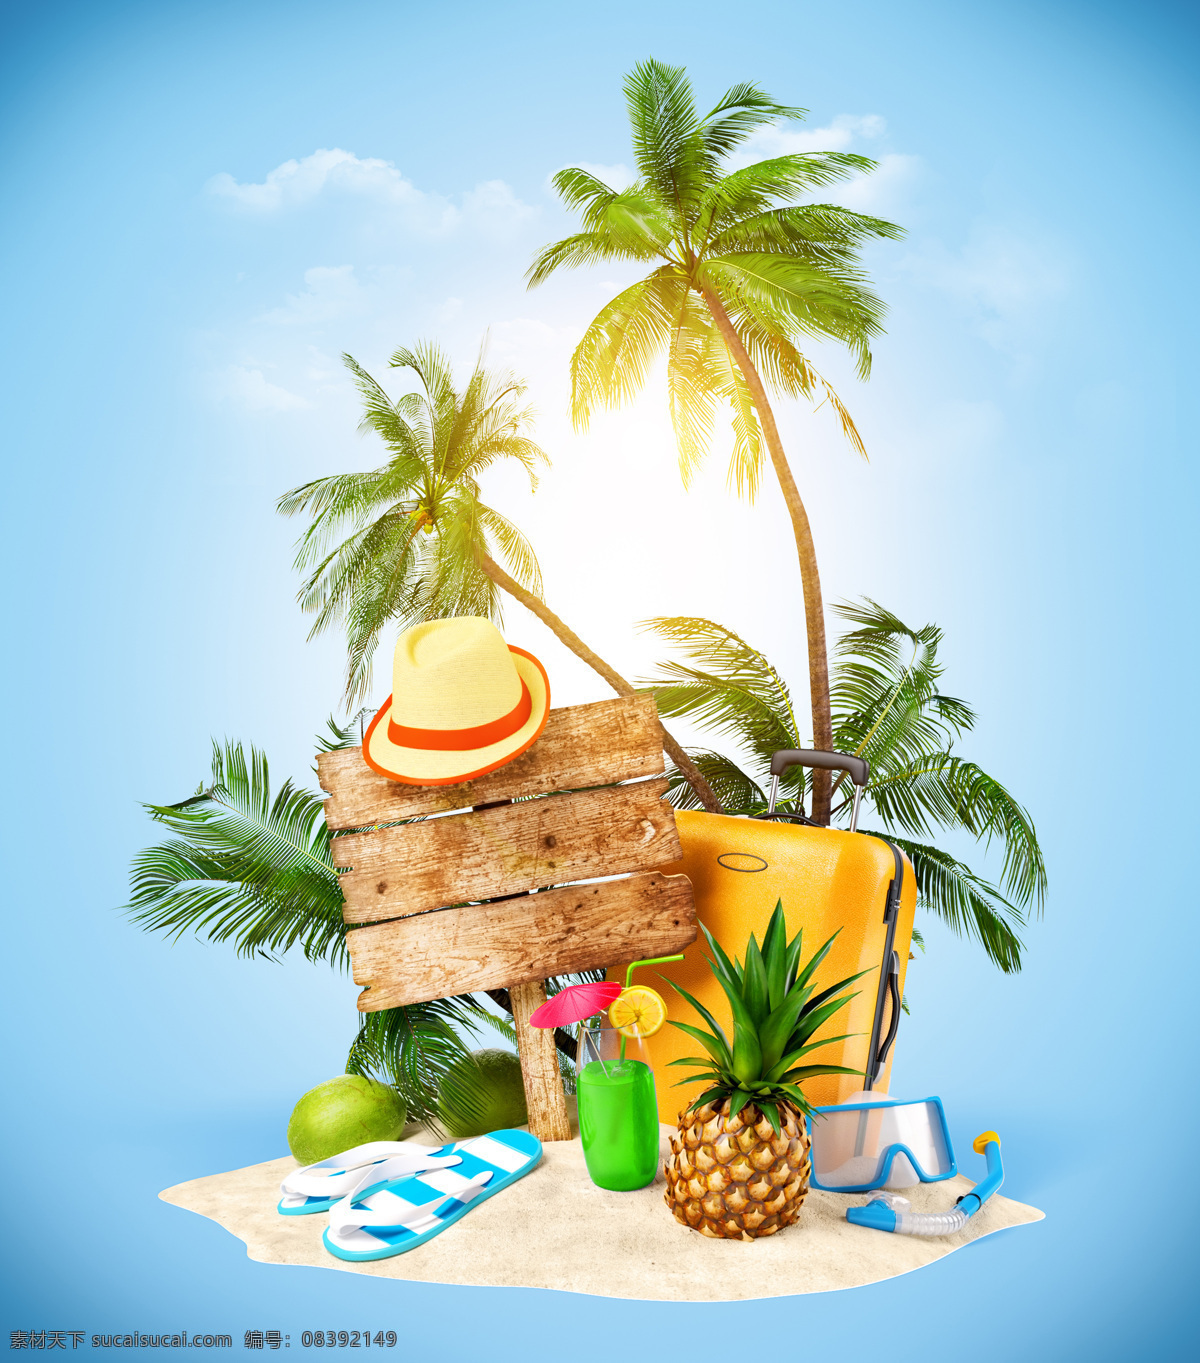 海边 旅行 创意 广告 海边旅游 夏季旅游 创意设计 创意广告 立体设计 3d设计 传单